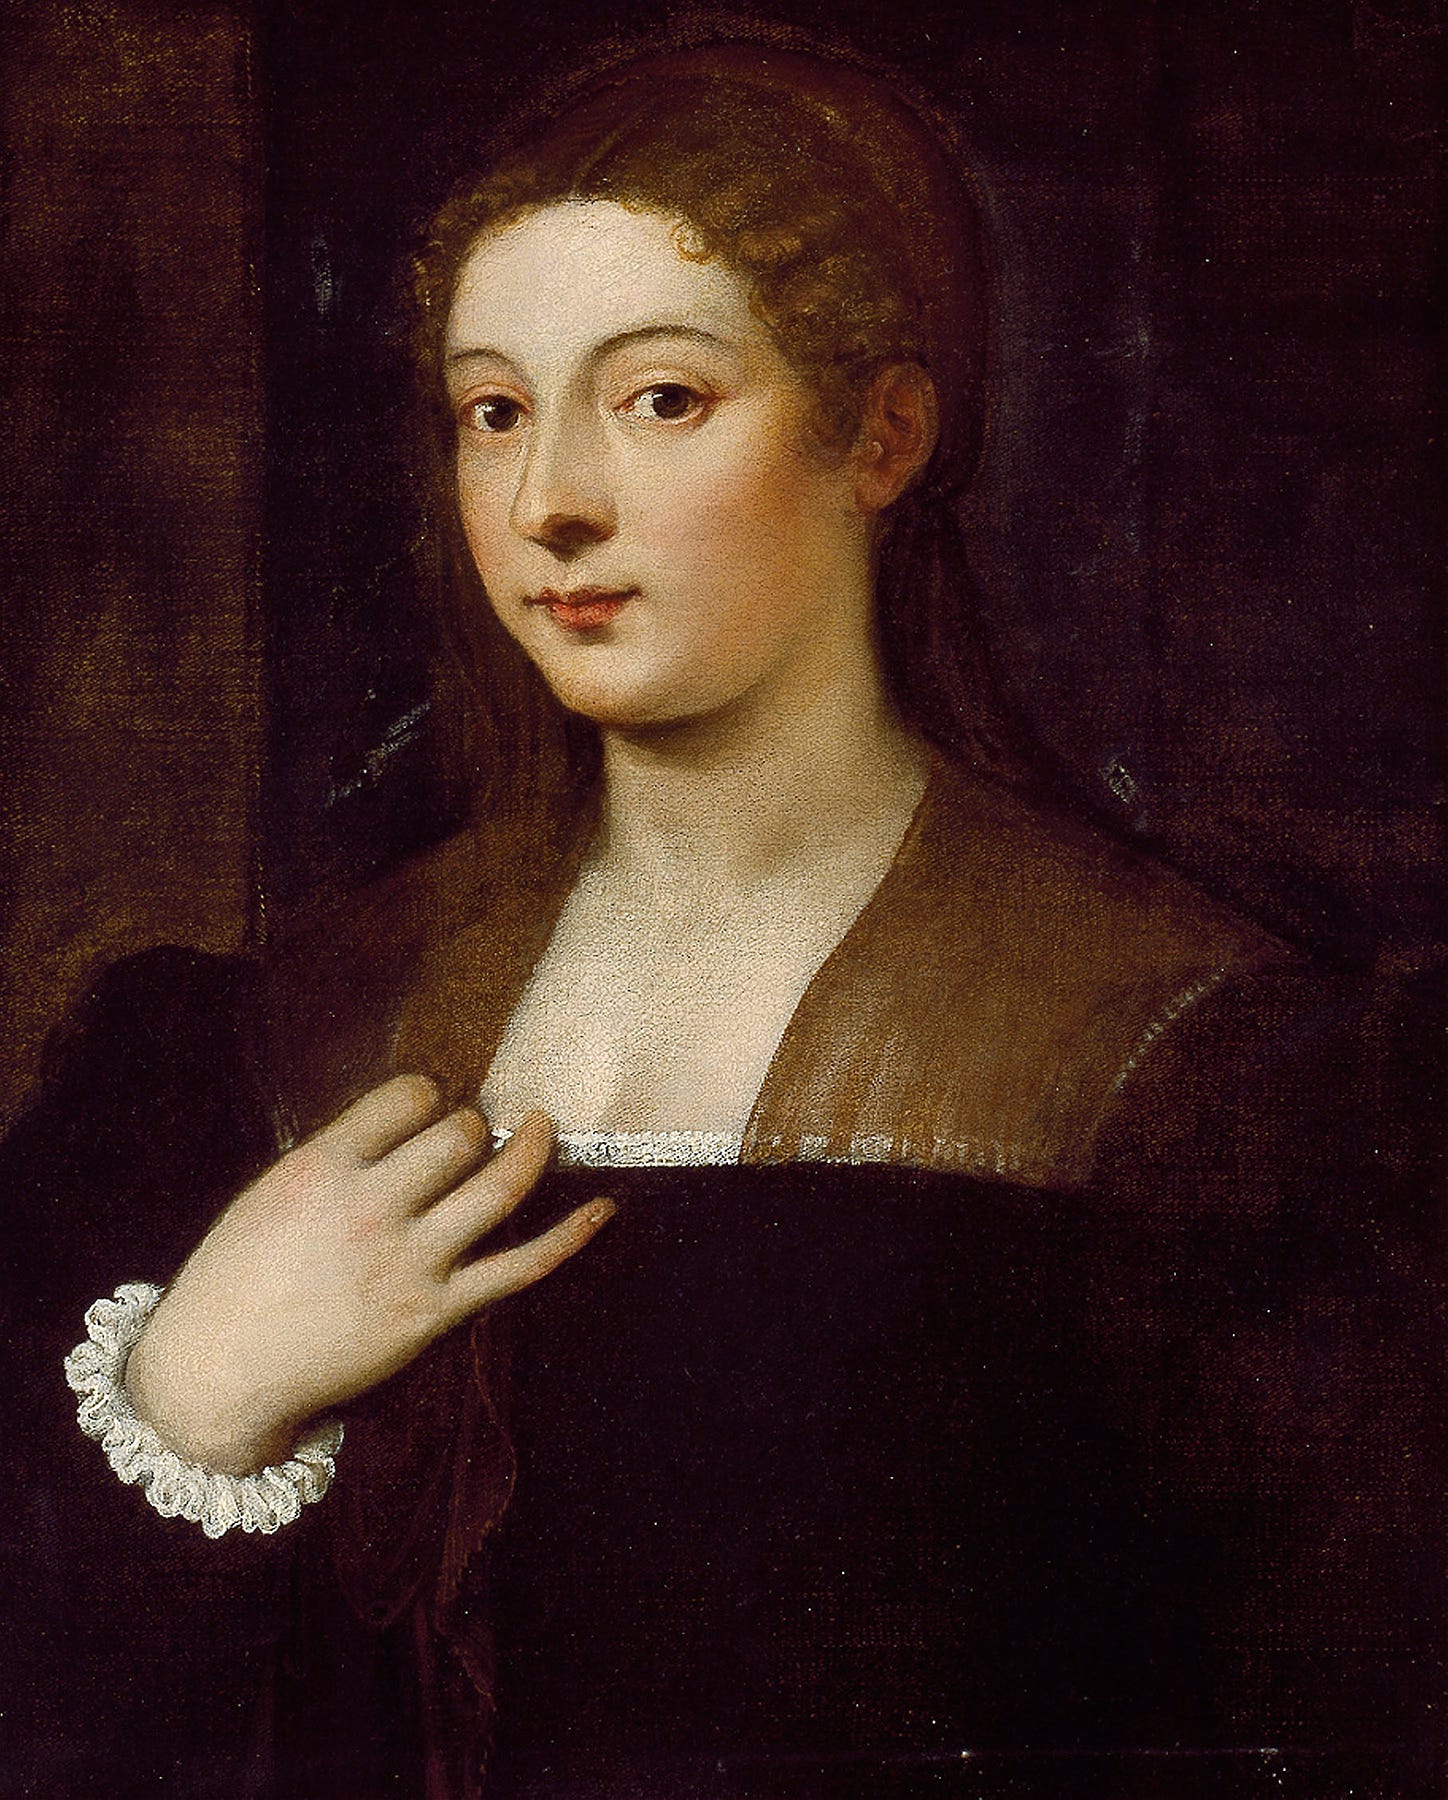 Artwork by Titian (Italian, c. 1488-1576)